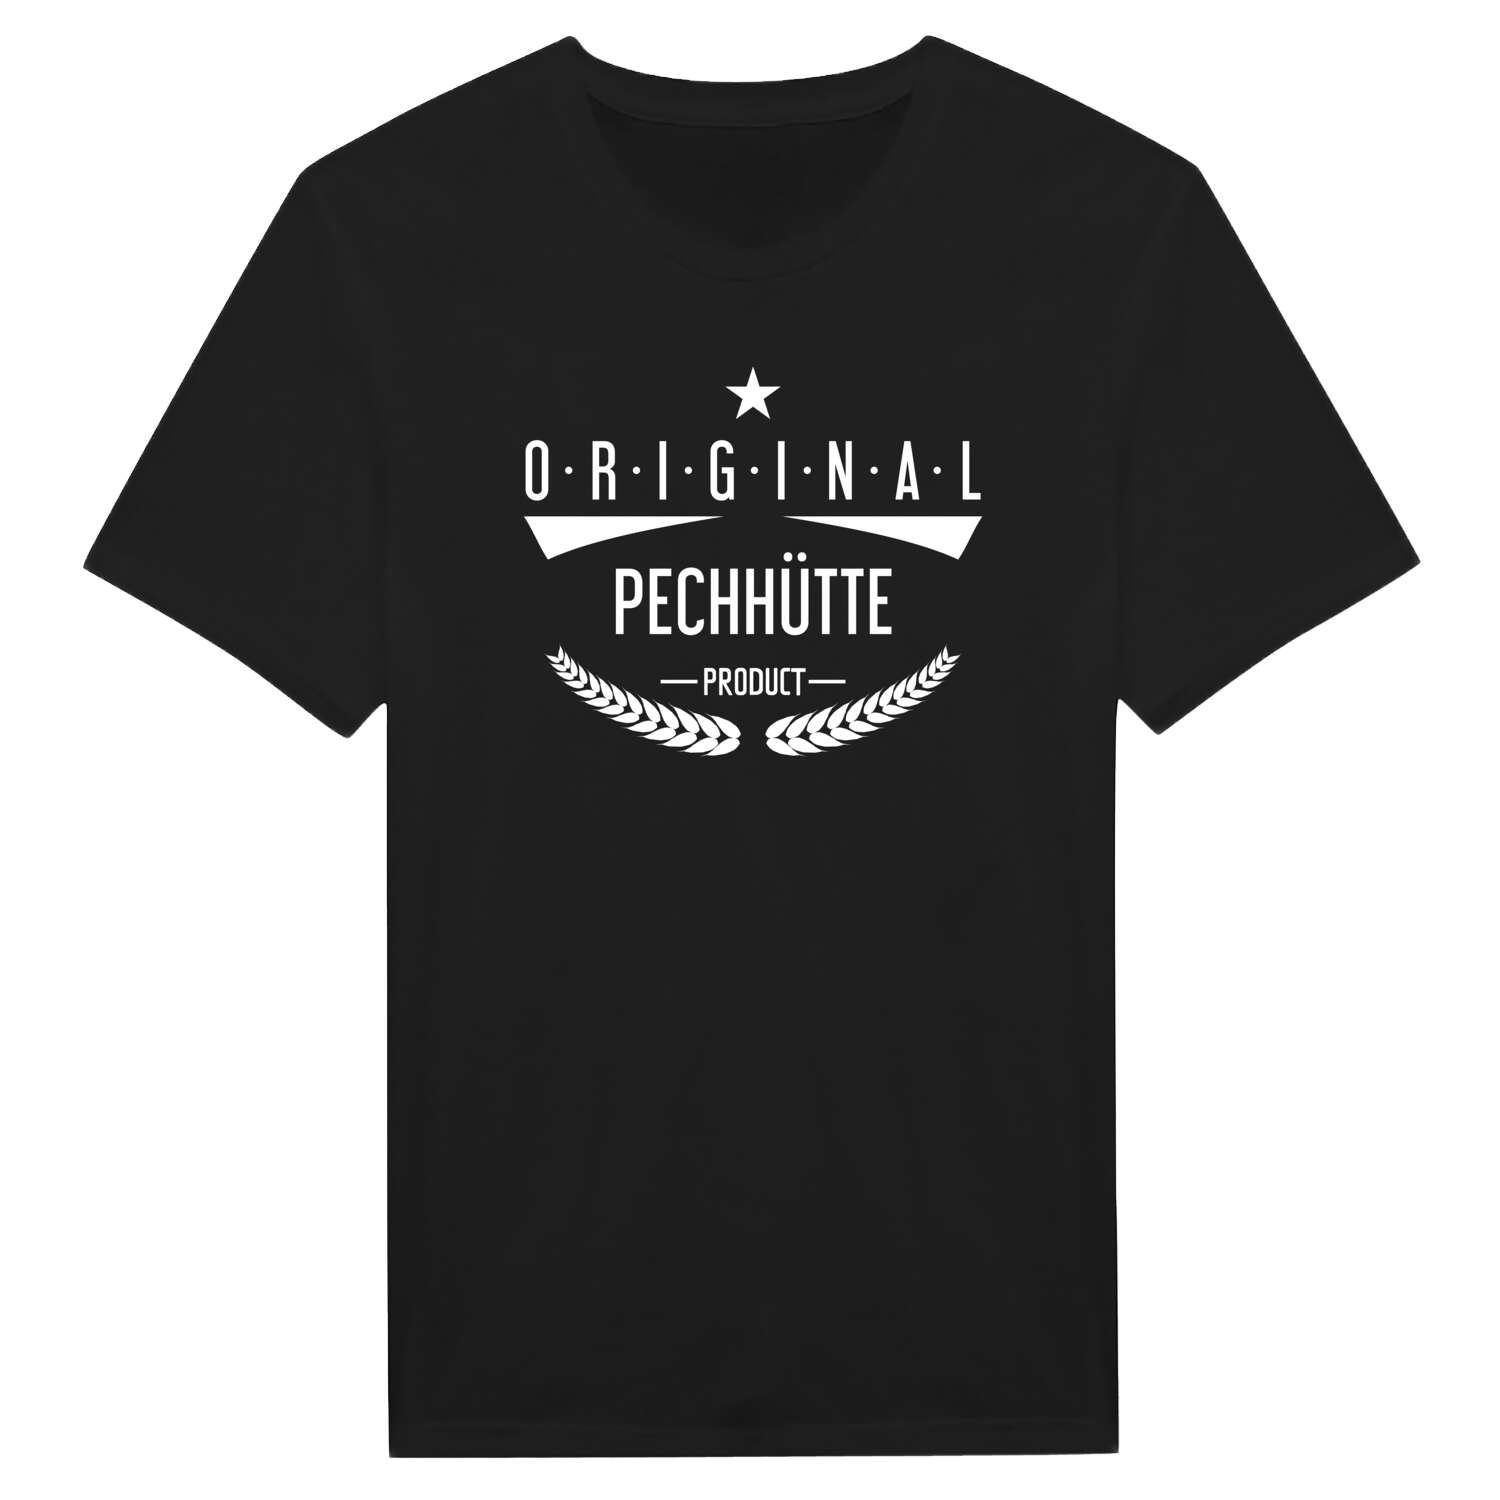 Pechhütte T-Shirt »Original Product«